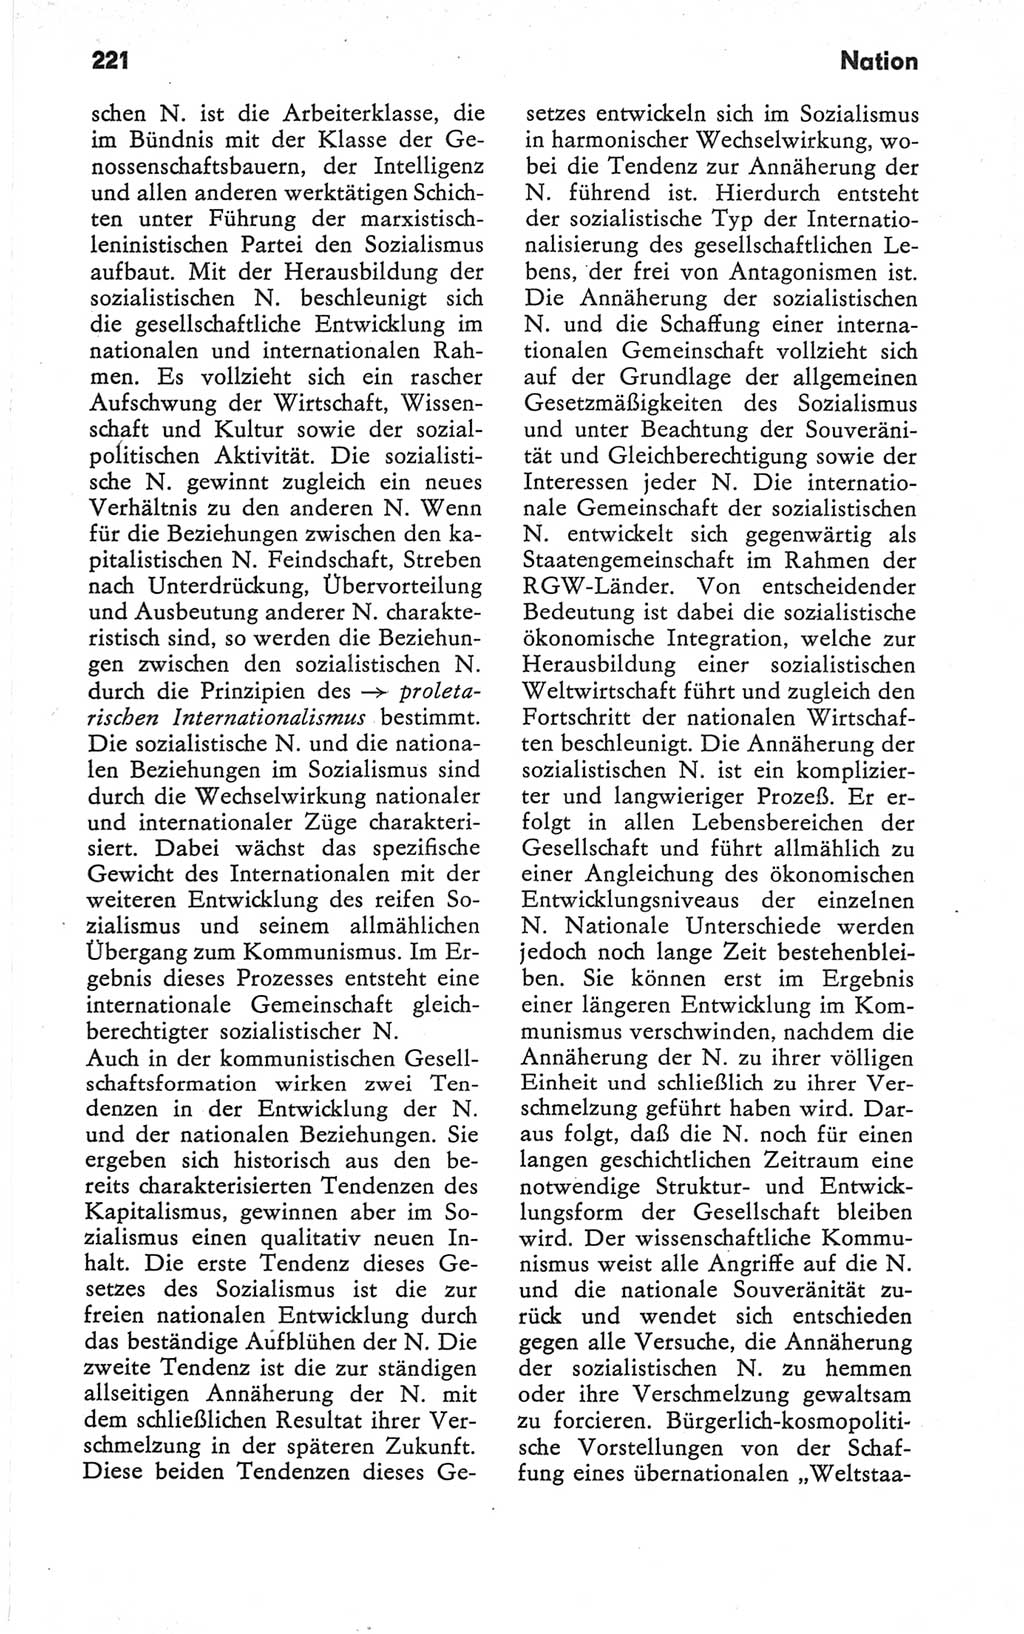 Kleines Wörterbuch der marxistisch-leninistischen Philosophie [Deutsche Demokratische Republik (DDR)] 1979, Seite 221 (Kl. Wb. ML Phil. DDR 1979, S. 221)